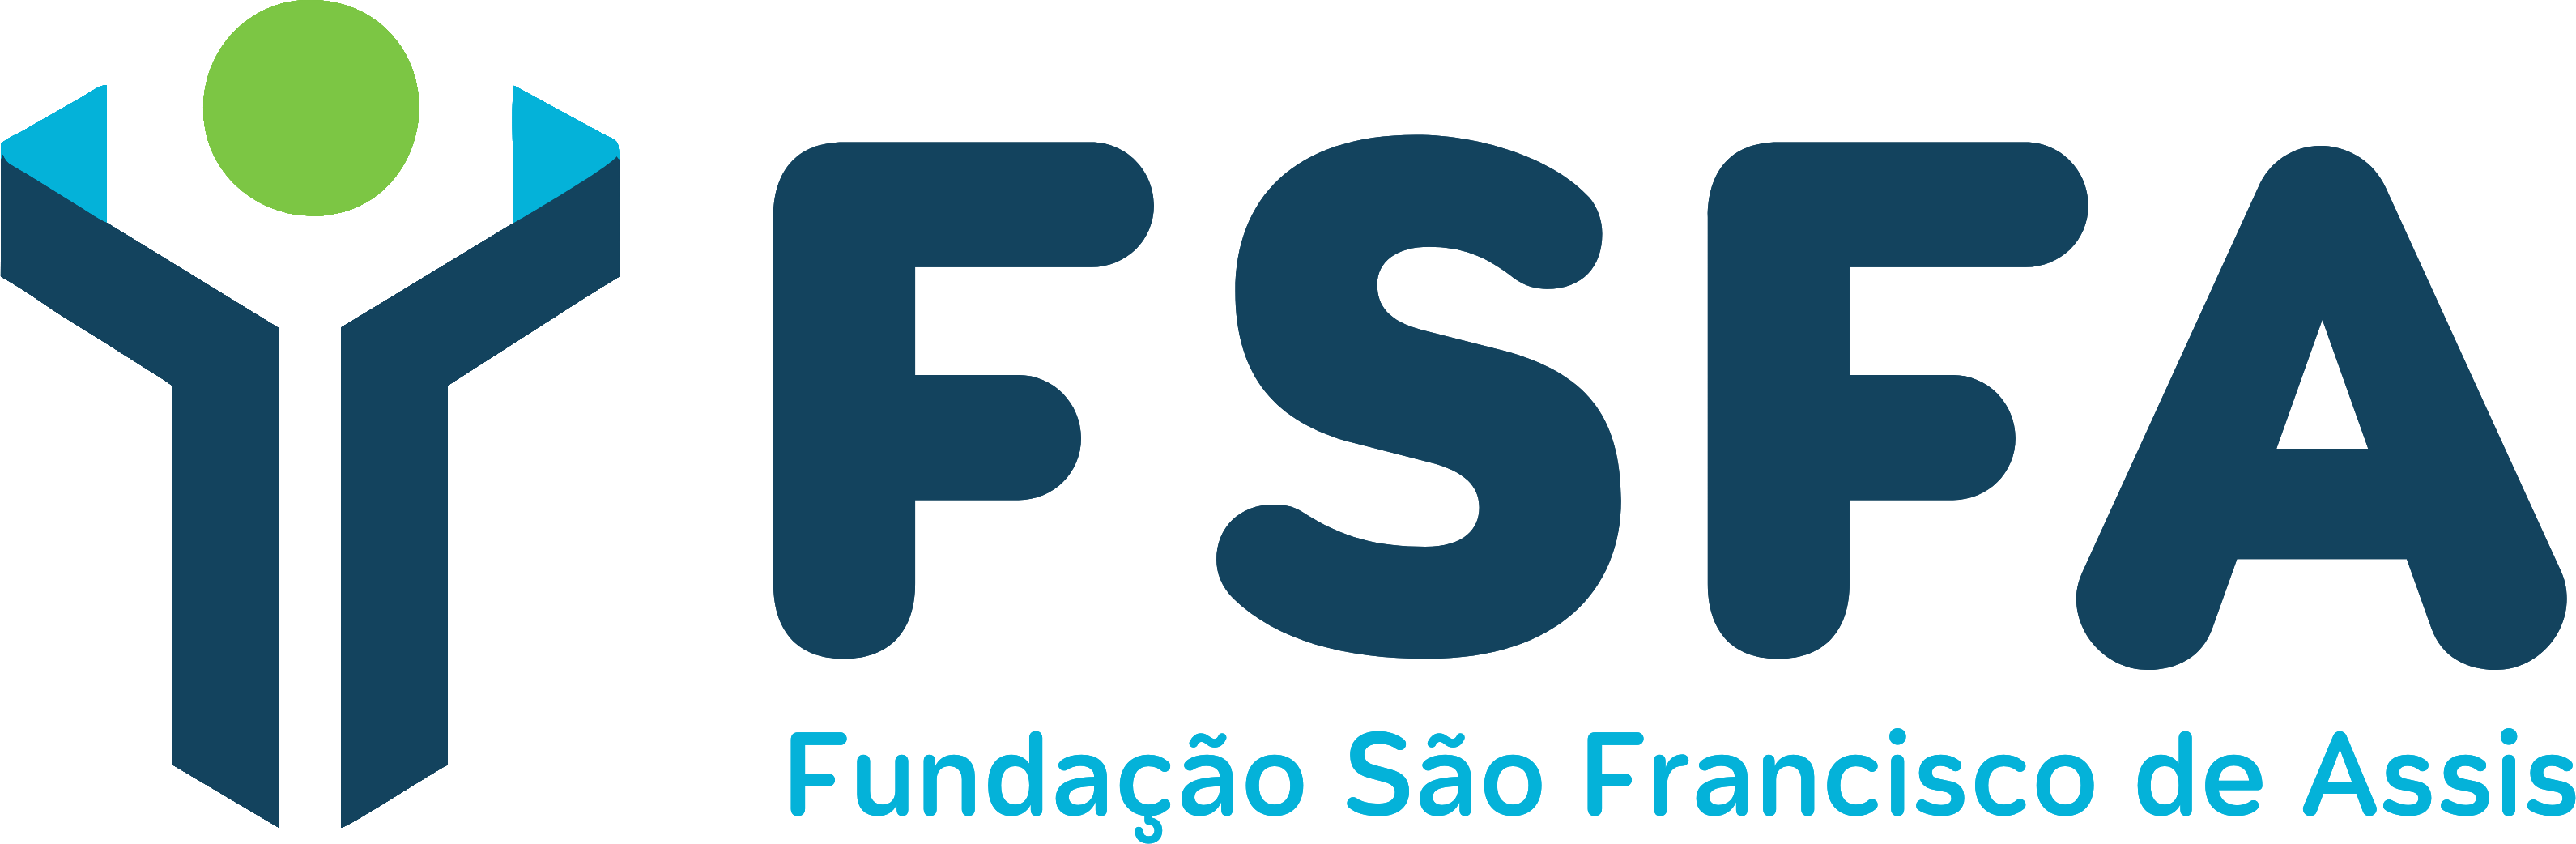 Fundação São Francisco de Assis